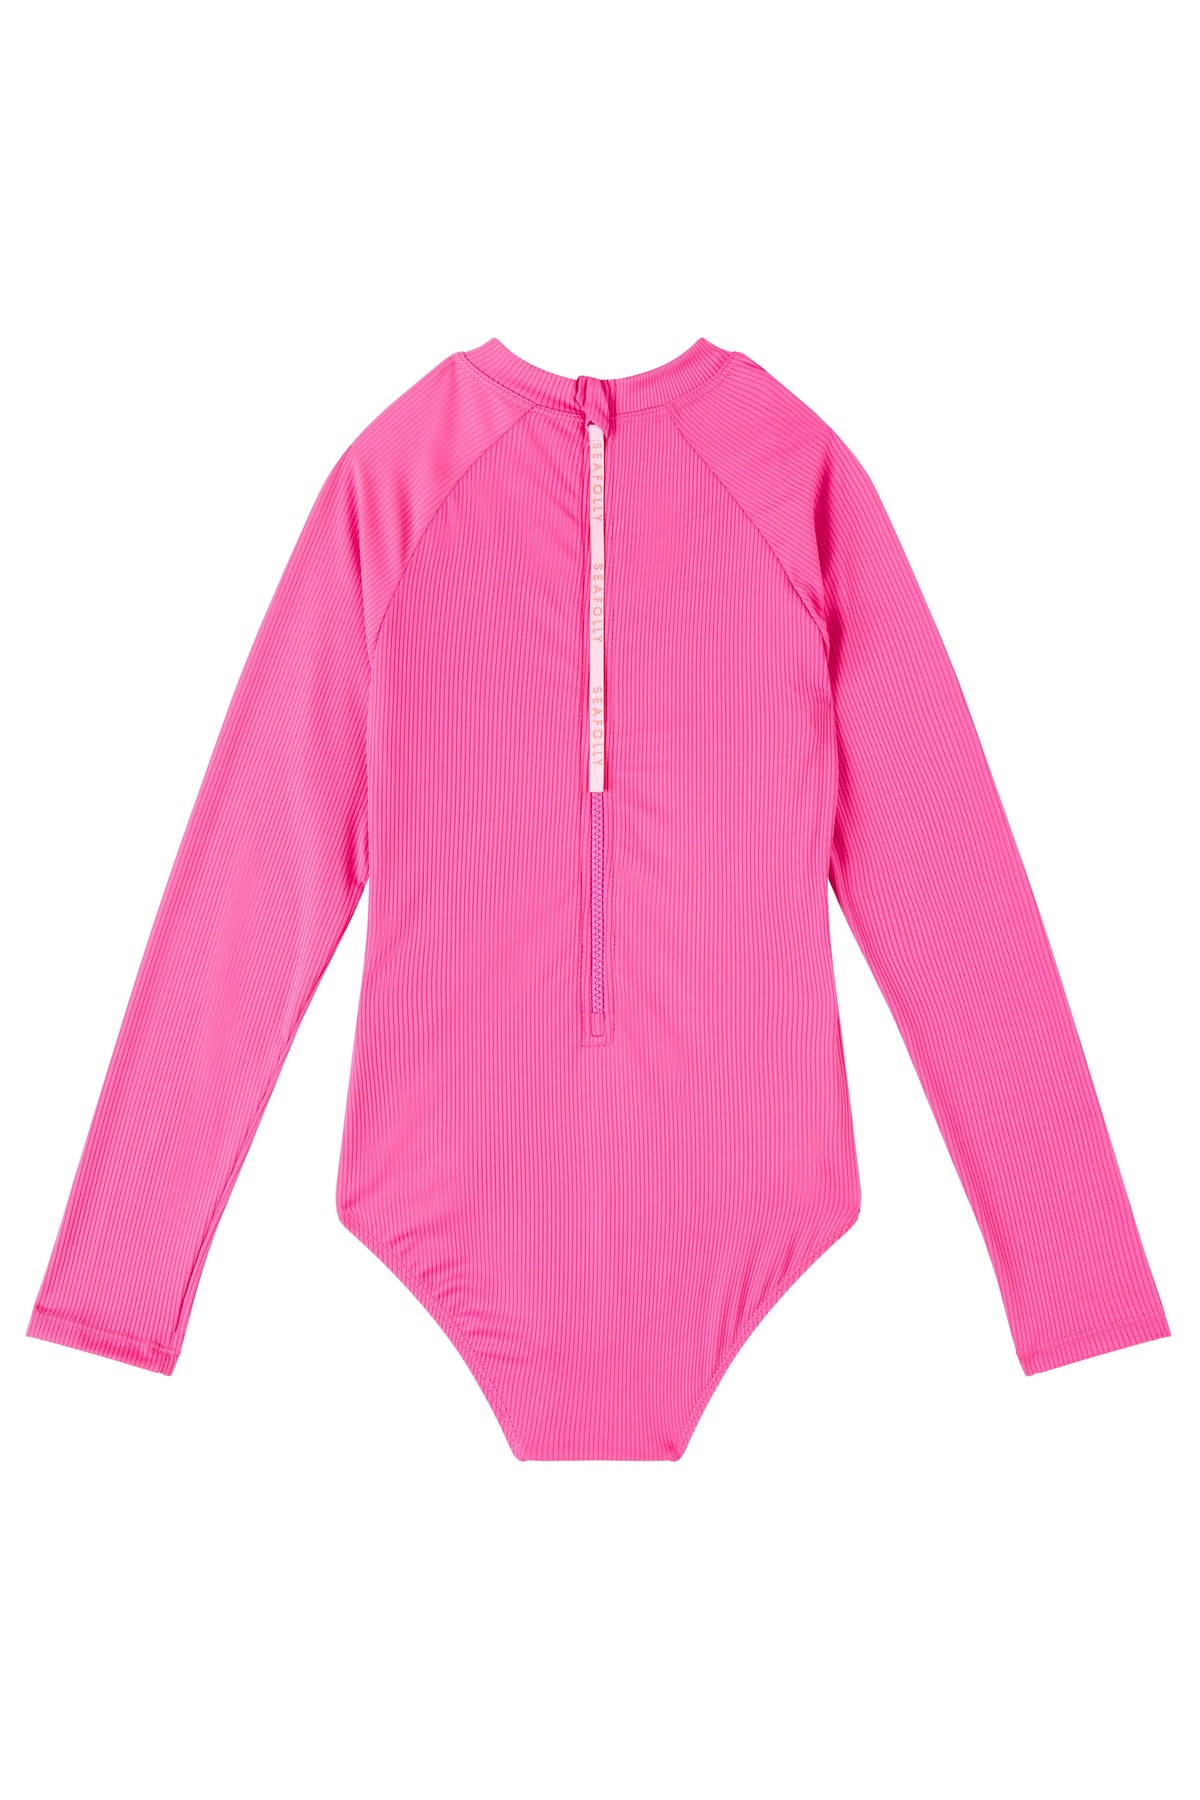 Girls Essential Panelled Paddlesuit - Pink - Seafolly Girls - Splash Swimwear  - April23, girls 8-16, kids, Seafolly Girls - Splash Swimwear 